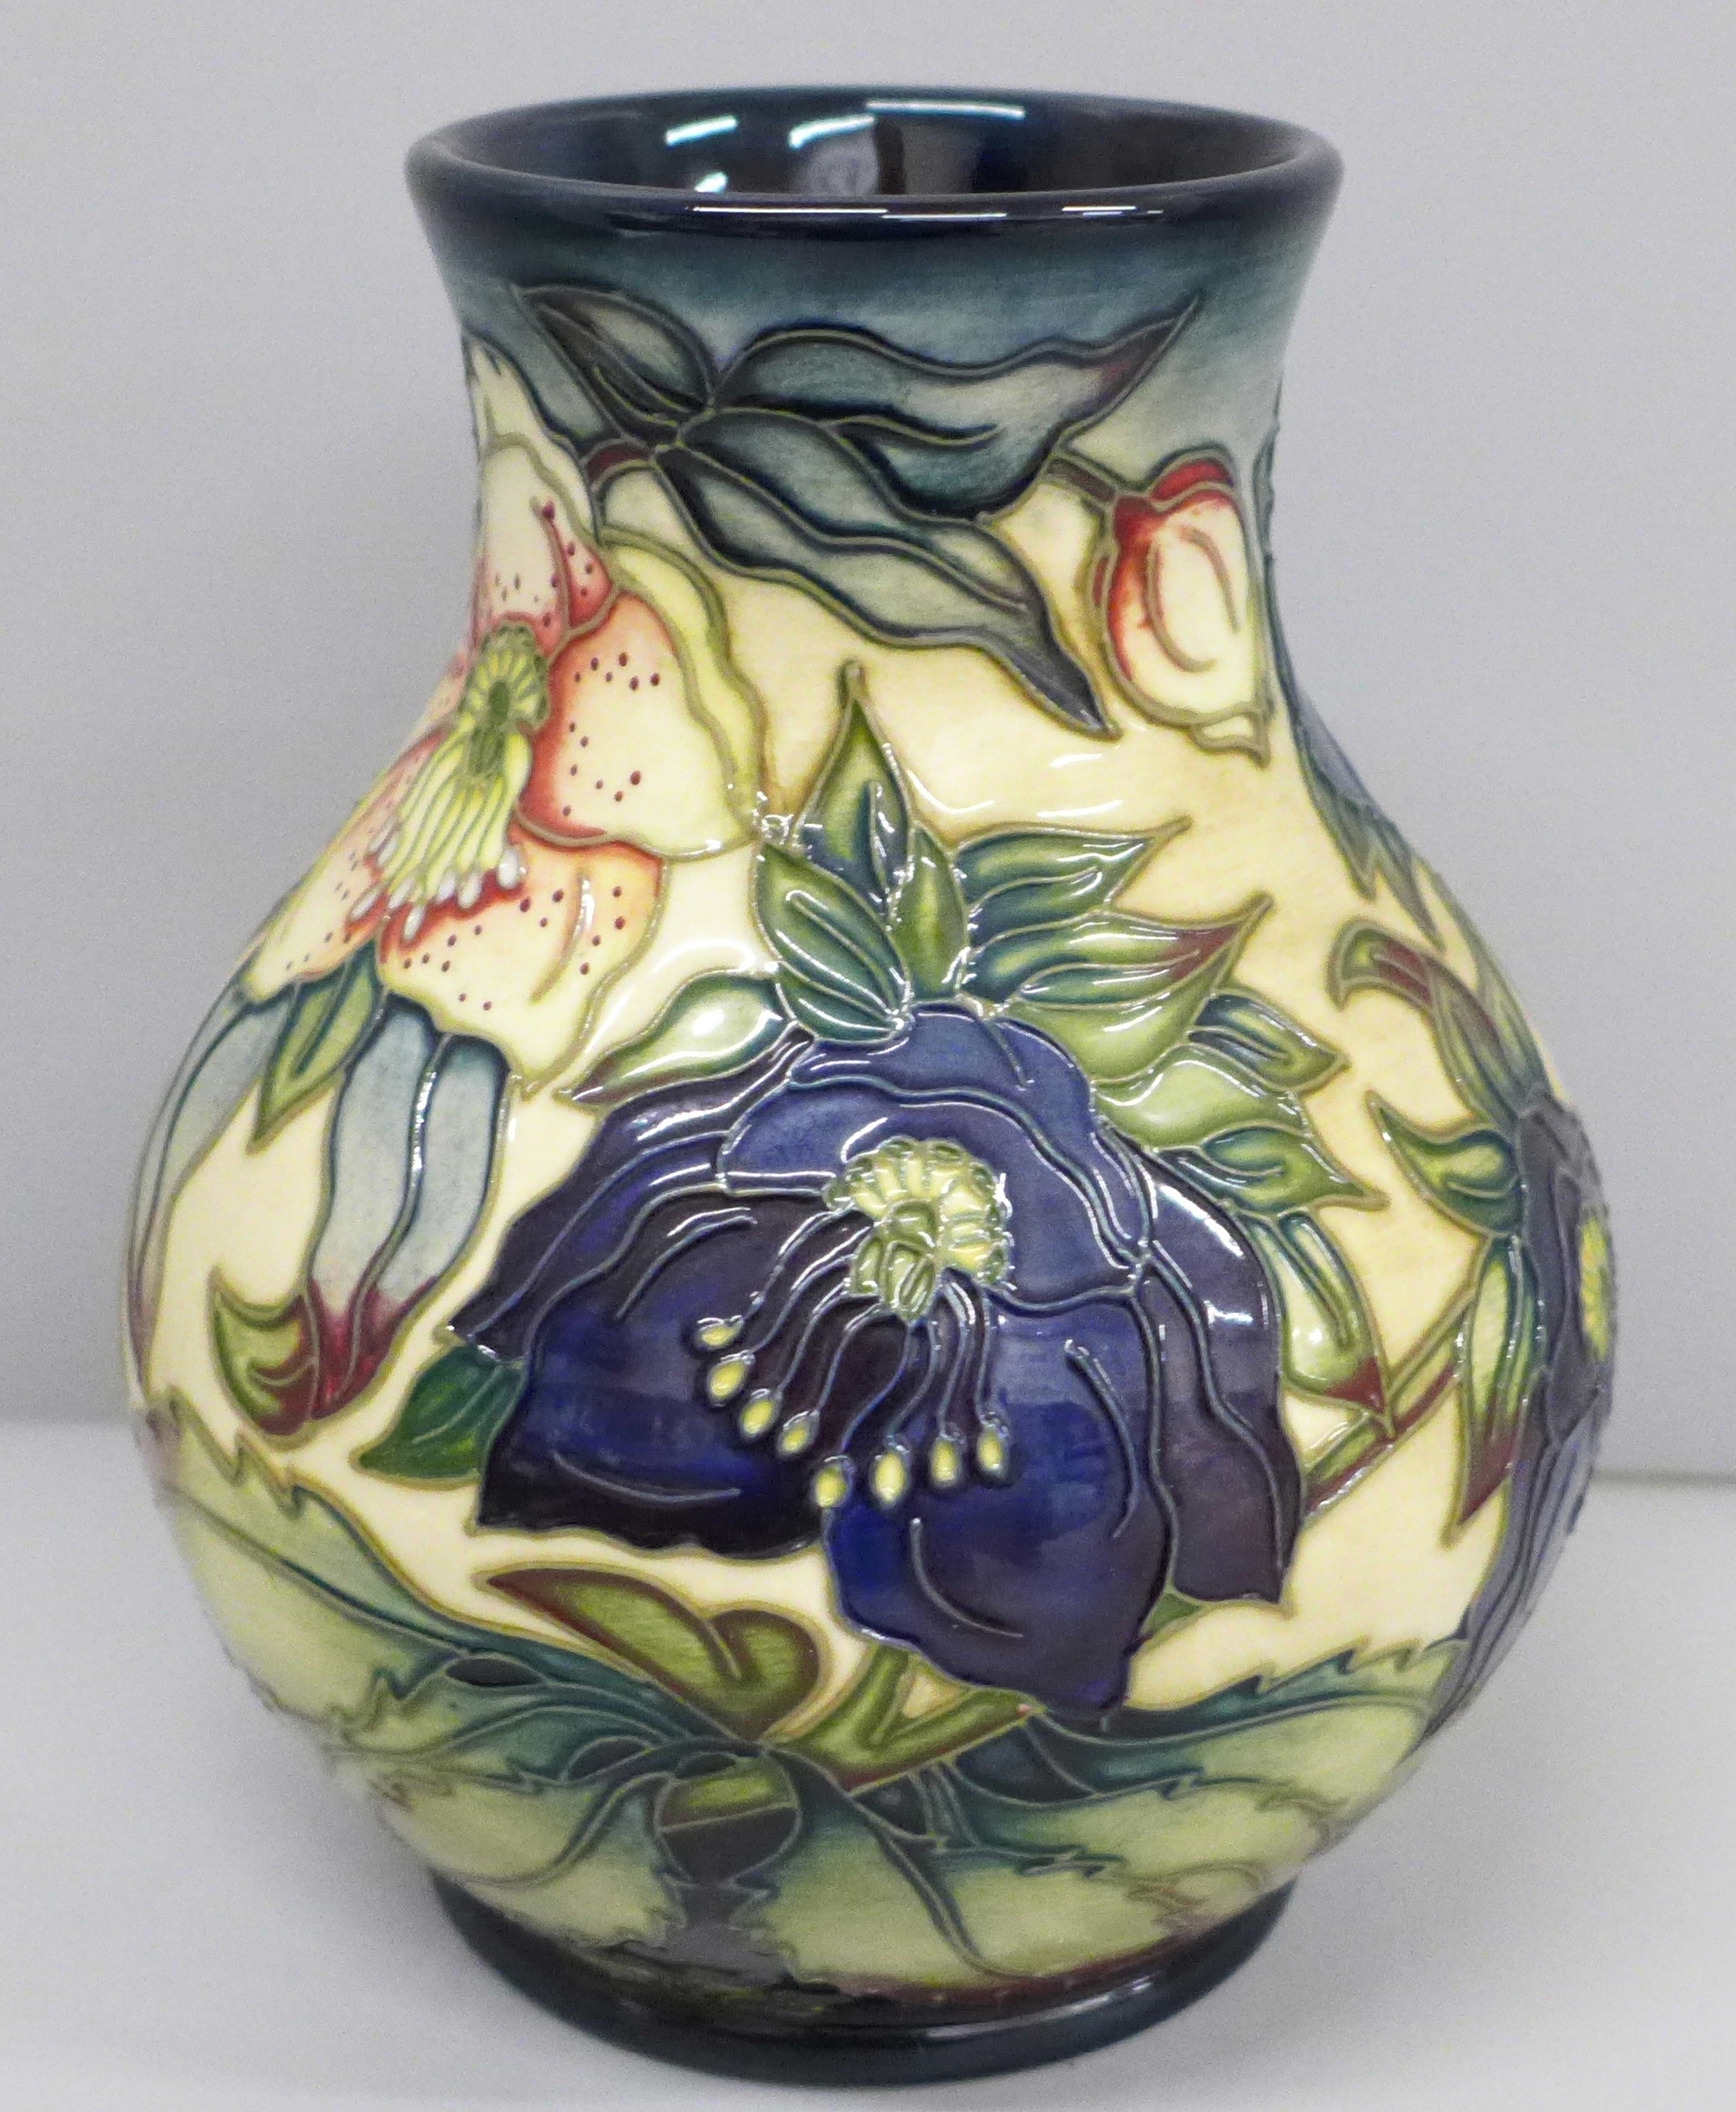 A Moorcroft Hellebore vase, 869/6, in original box, 16cm